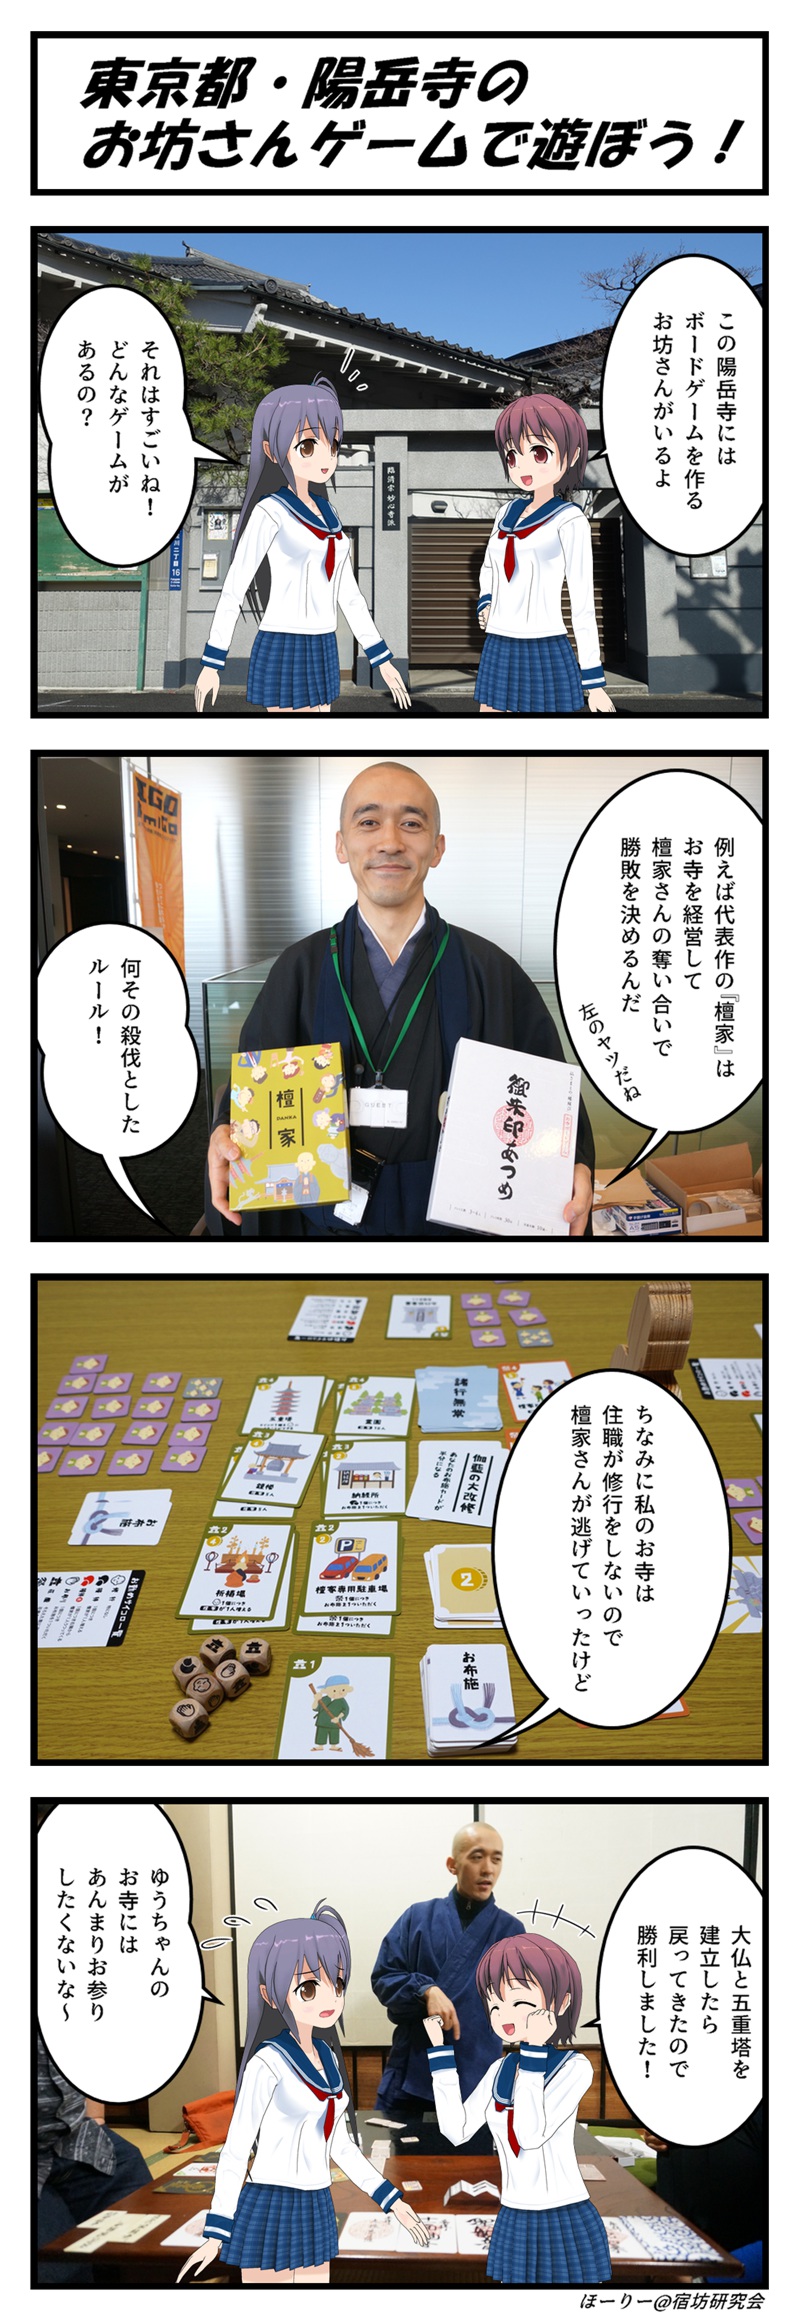 陽岳寺の四コマ漫画